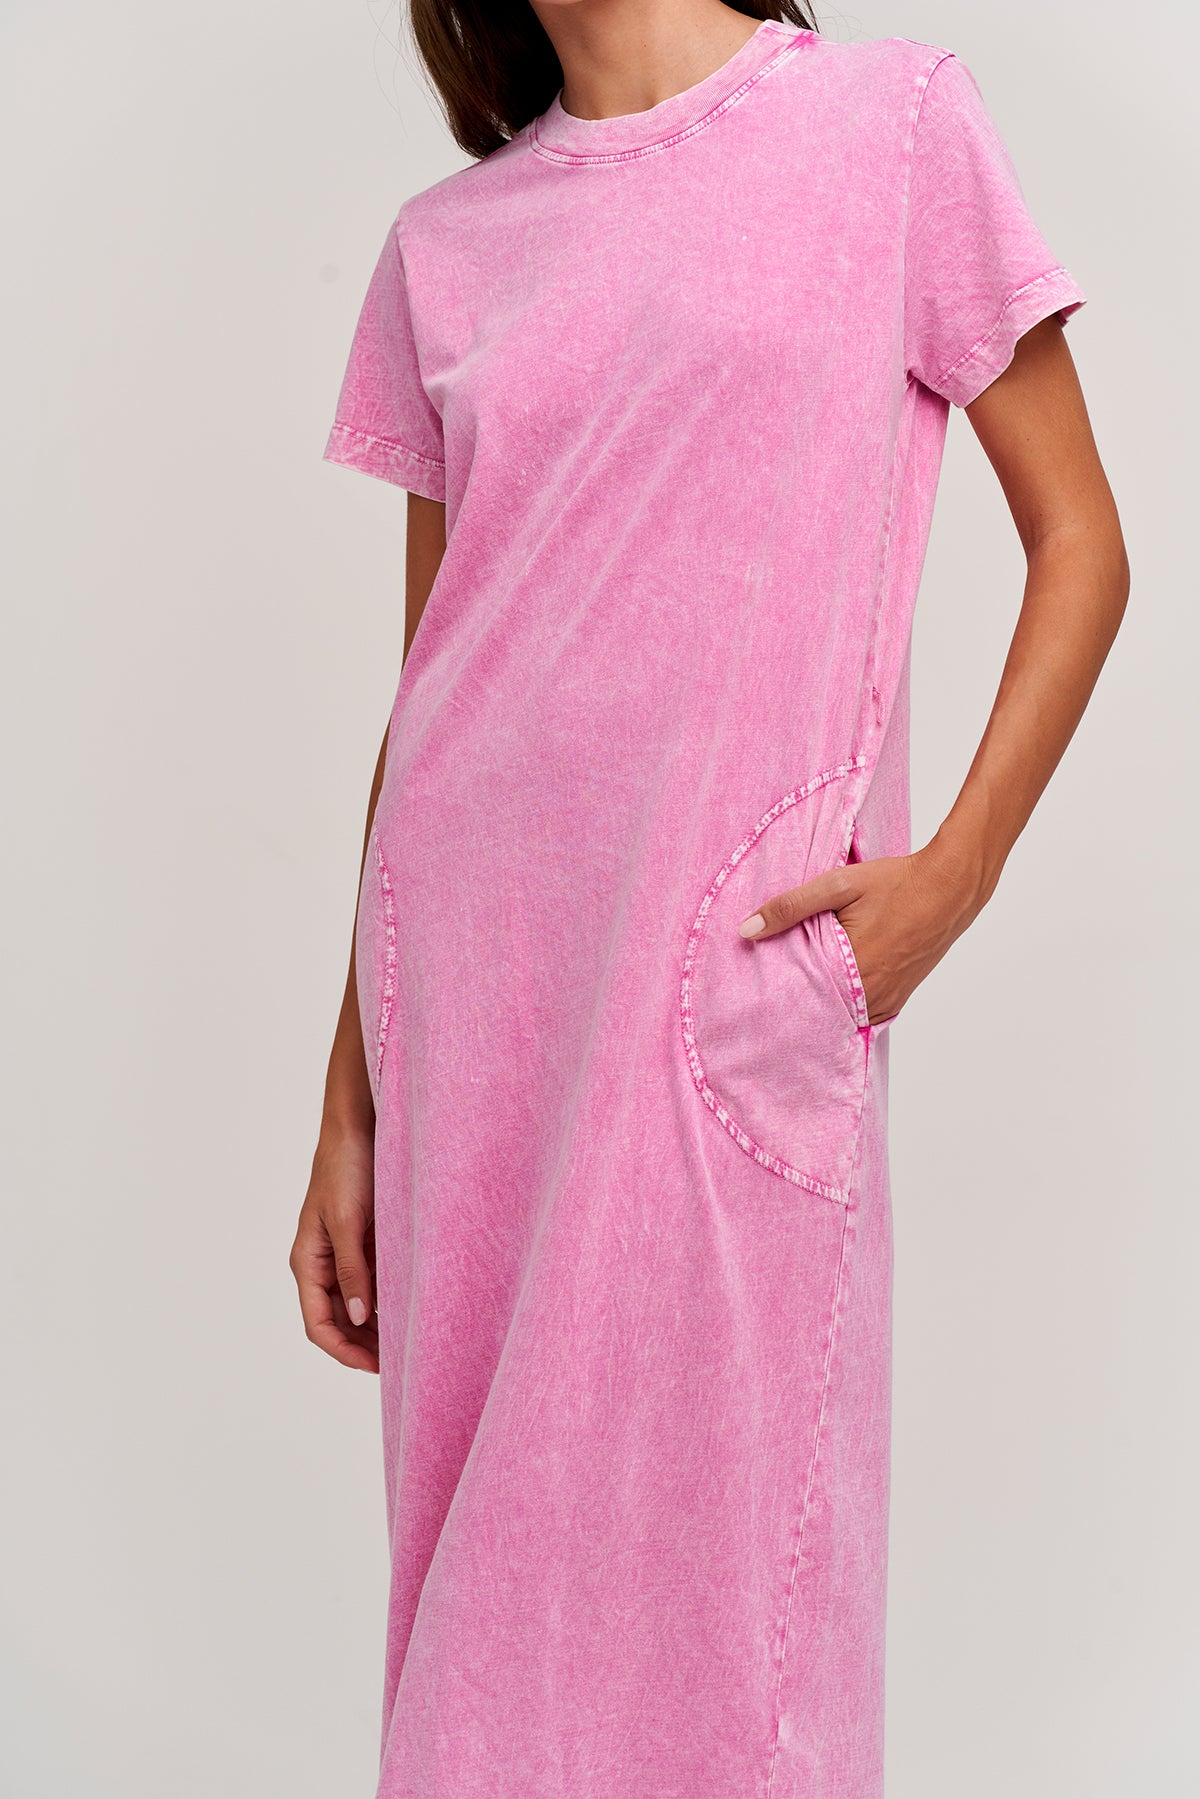 Gabby jersey dress front 2 pink-24740256088257